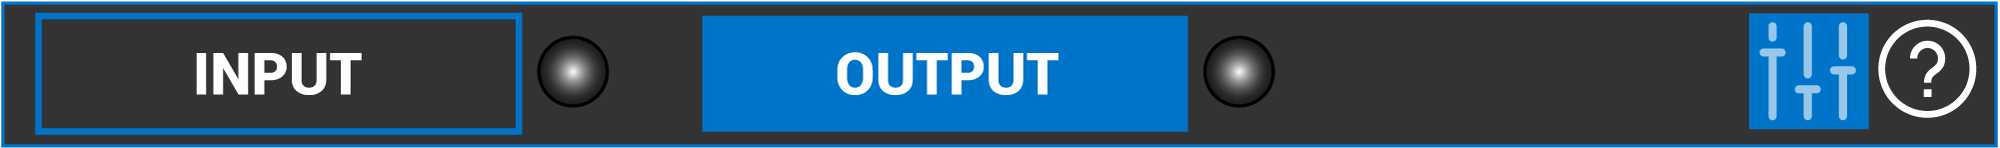 Input-output-Panel.png